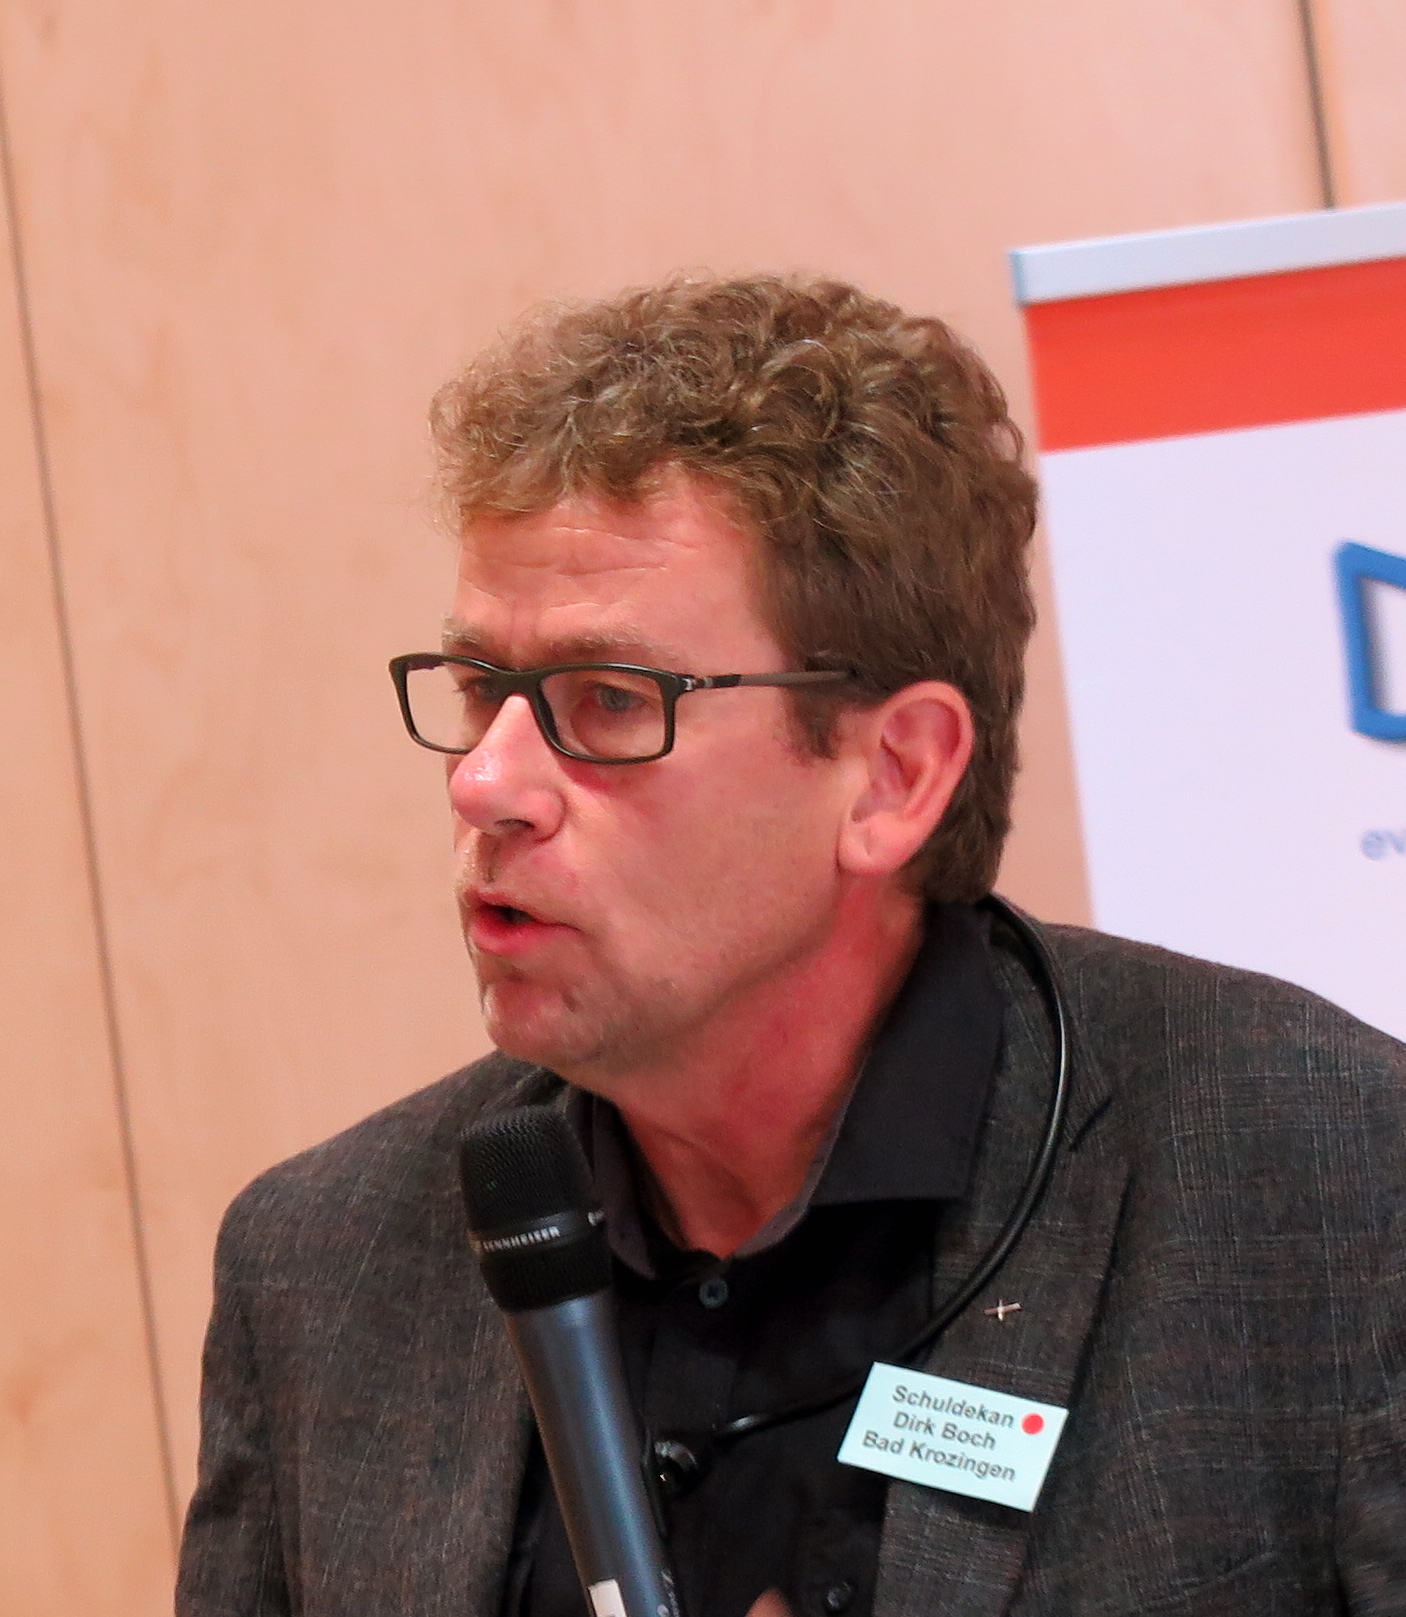 Schuldekan Dirk Boch bei der Herbstsynode 2018